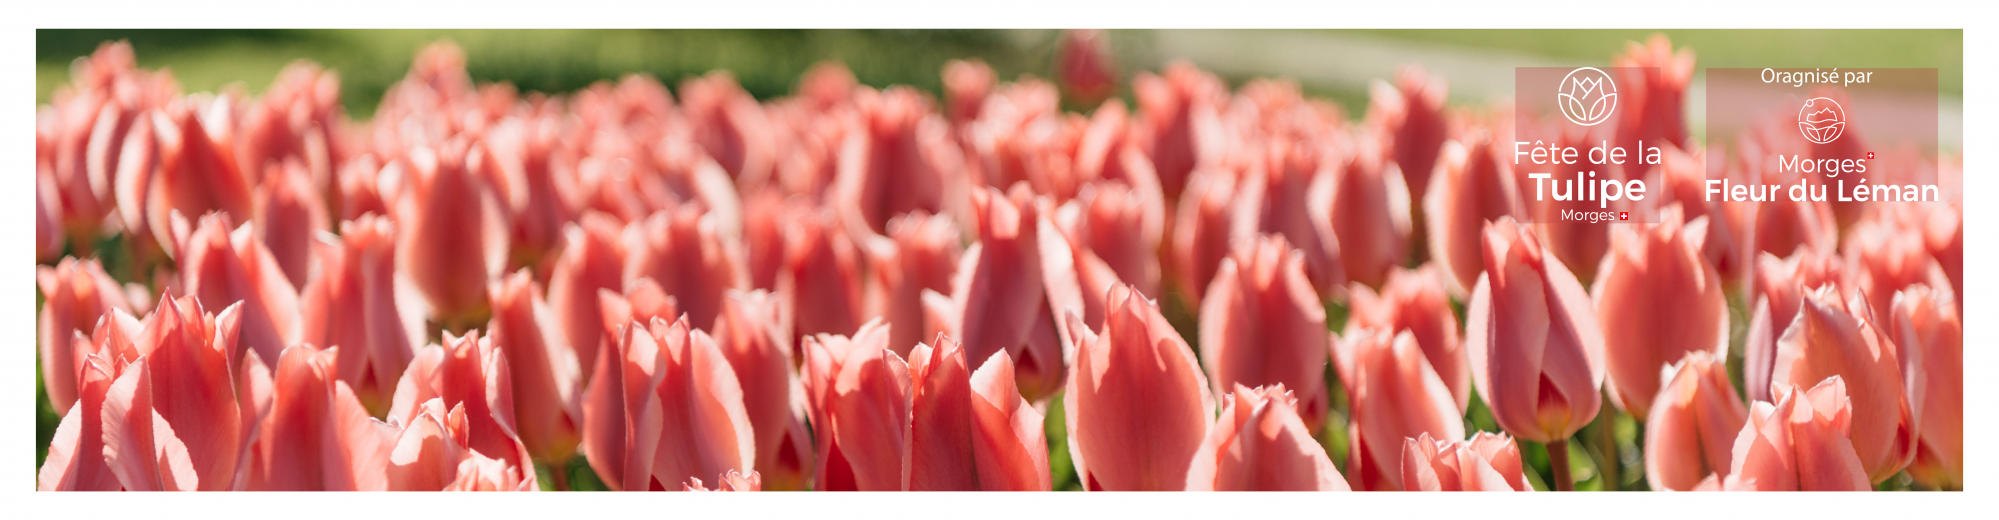 Fête de la tulipe 2021 ©Rafael Dupertuis